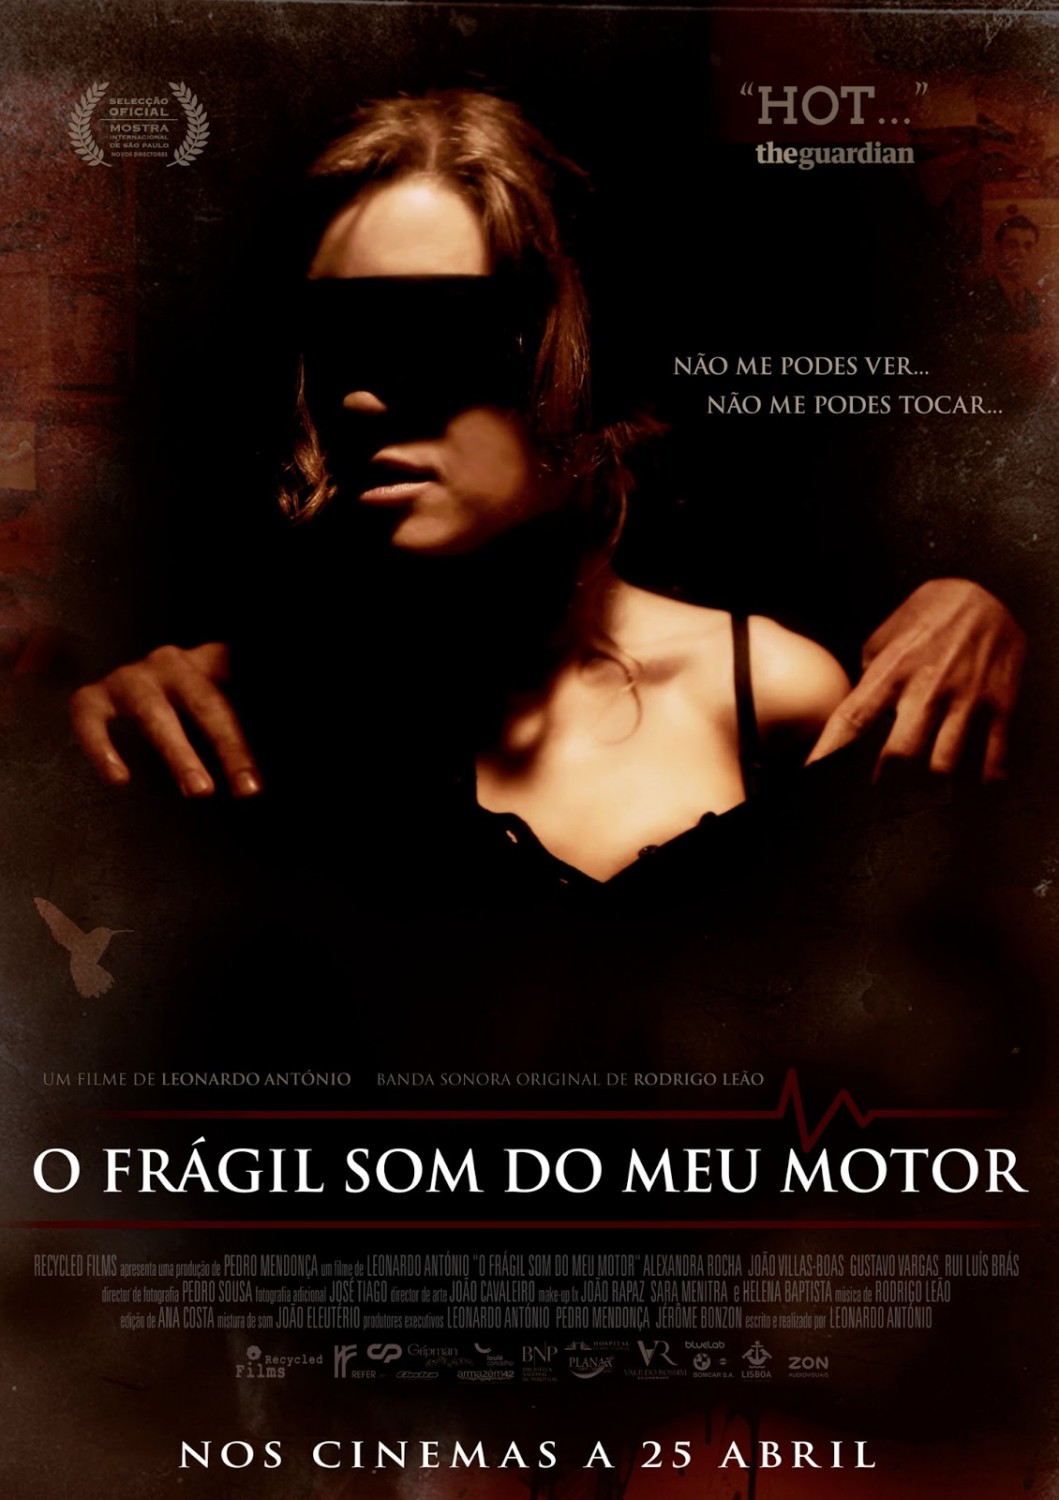 Extra Large Movie Poster Image for O Frágil Som do Meu Motor 